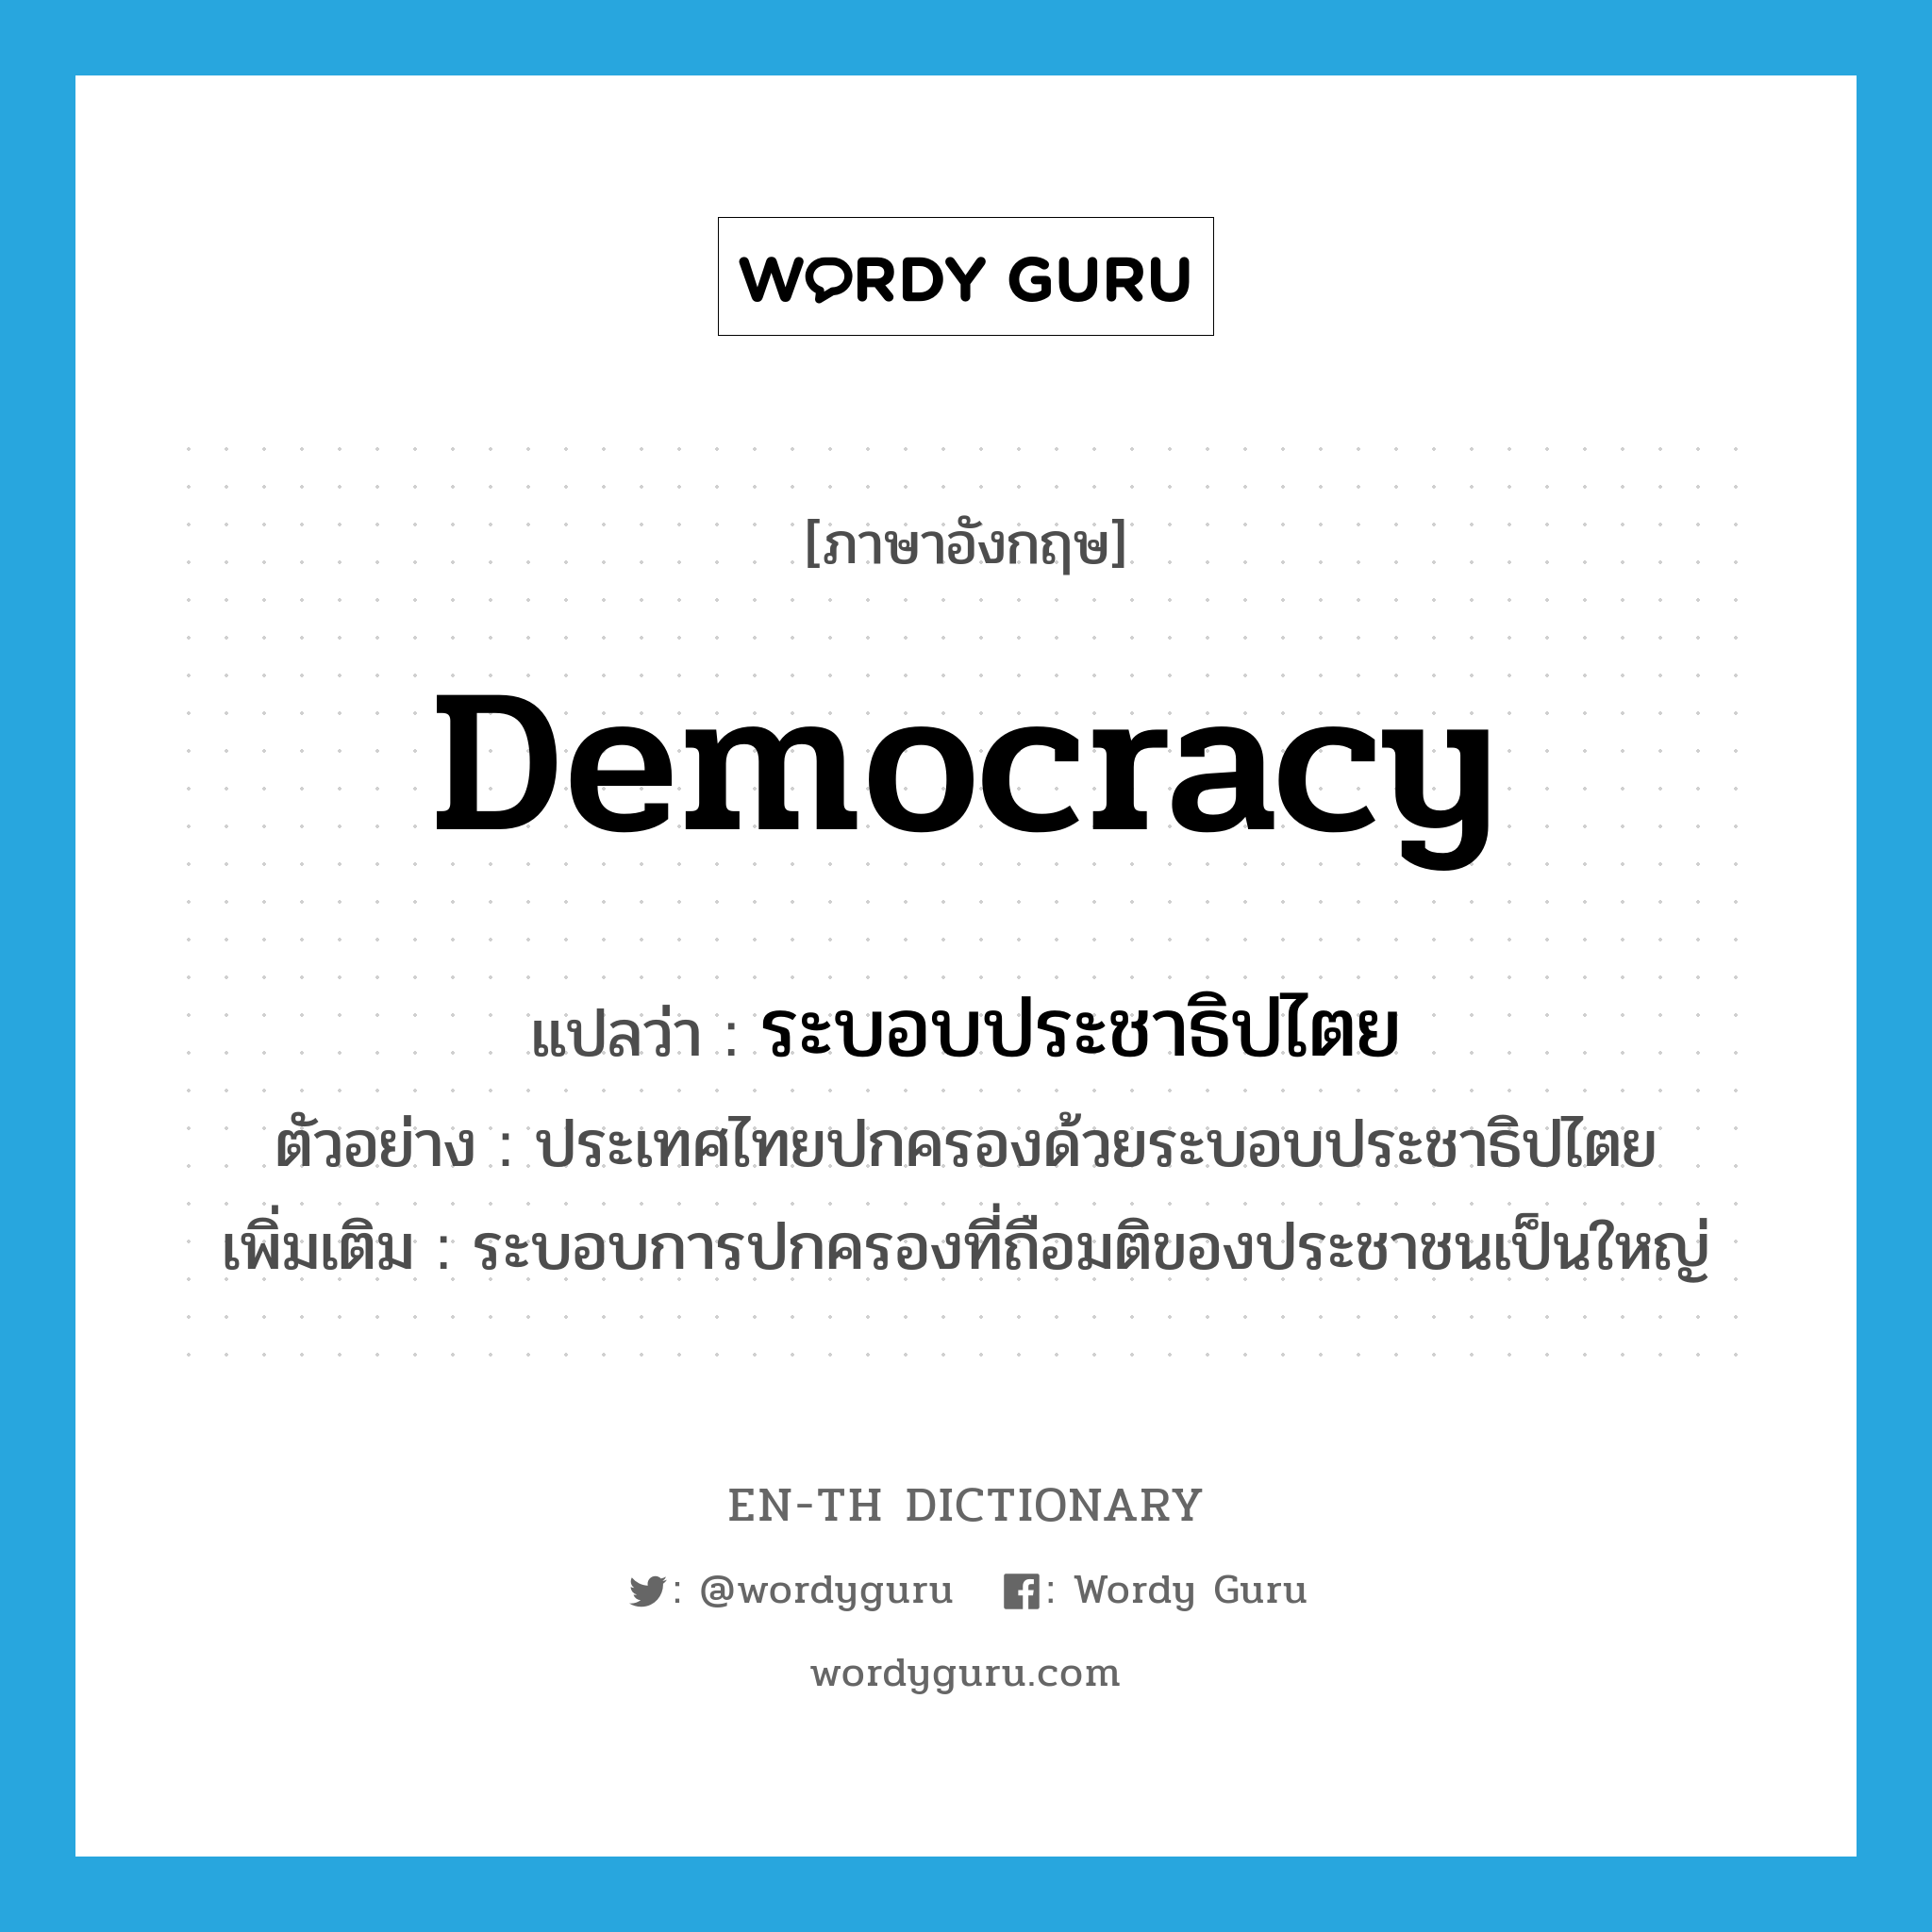 ระบอบประชาธิปไตย ภาษาอังกฤษ?, คำศัพท์ภาษาอังกฤษ ระบอบประชาธิปไตย แปลว่า democracy ประเภท N ตัวอย่าง ประเทศไทยปกครองด้วยระบอบประชาธิปไตย เพิ่มเติม ระบอบการปกครองที่ถือมติของประชาชนเป็นใหญ่ หมวด N